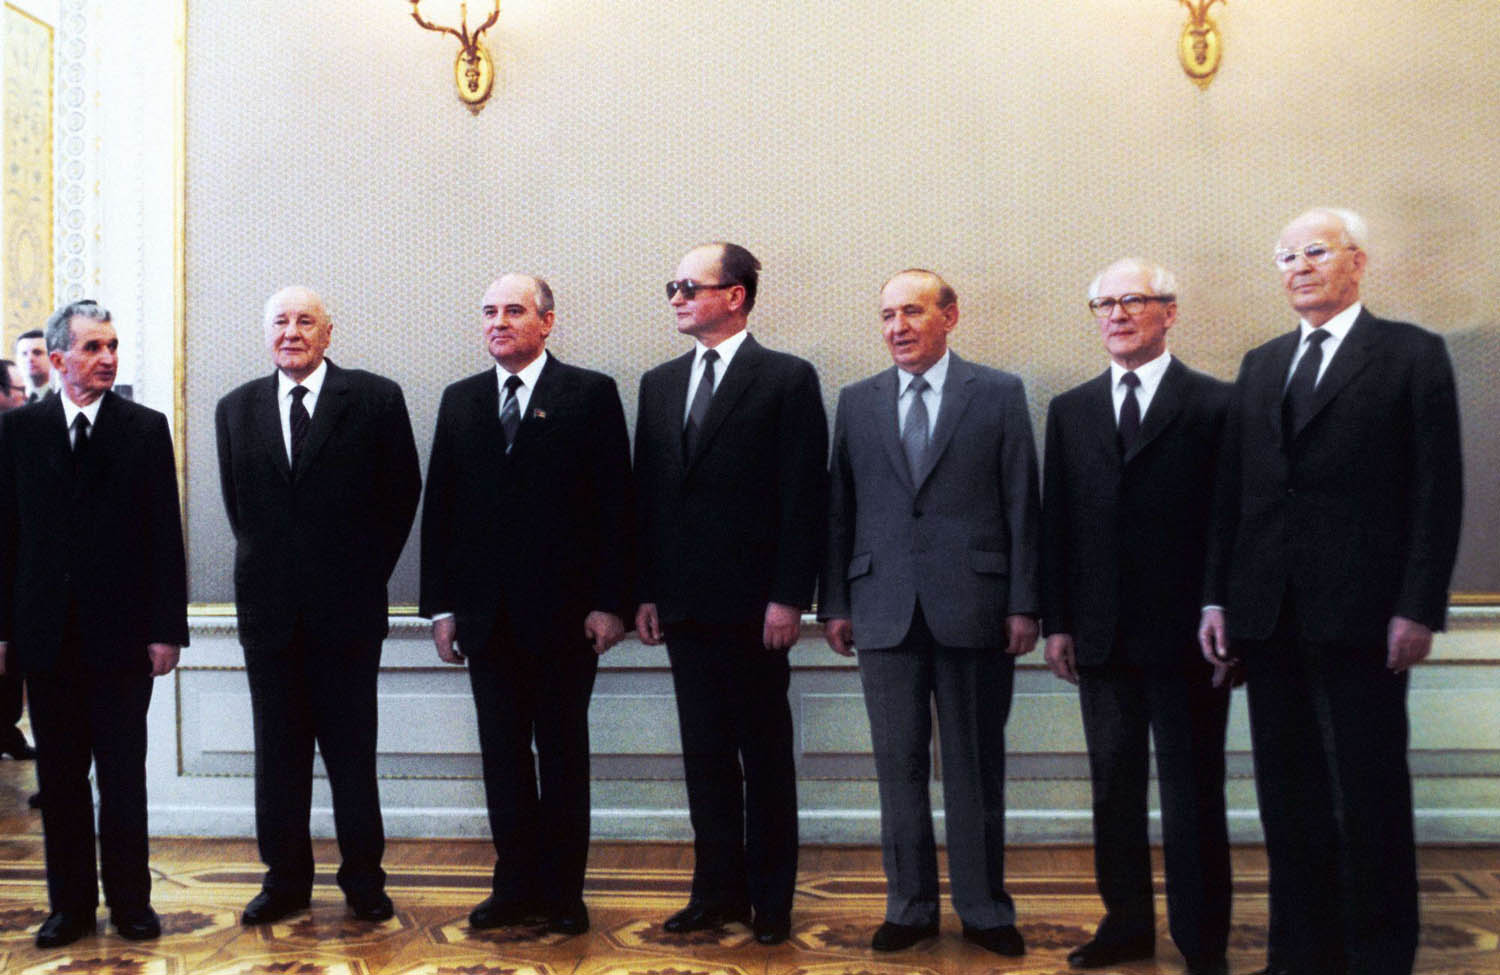 جيفكوف في لقطة تاريخية مع غورباتشوف وزعماء حلف وارسو في آخر أيامه